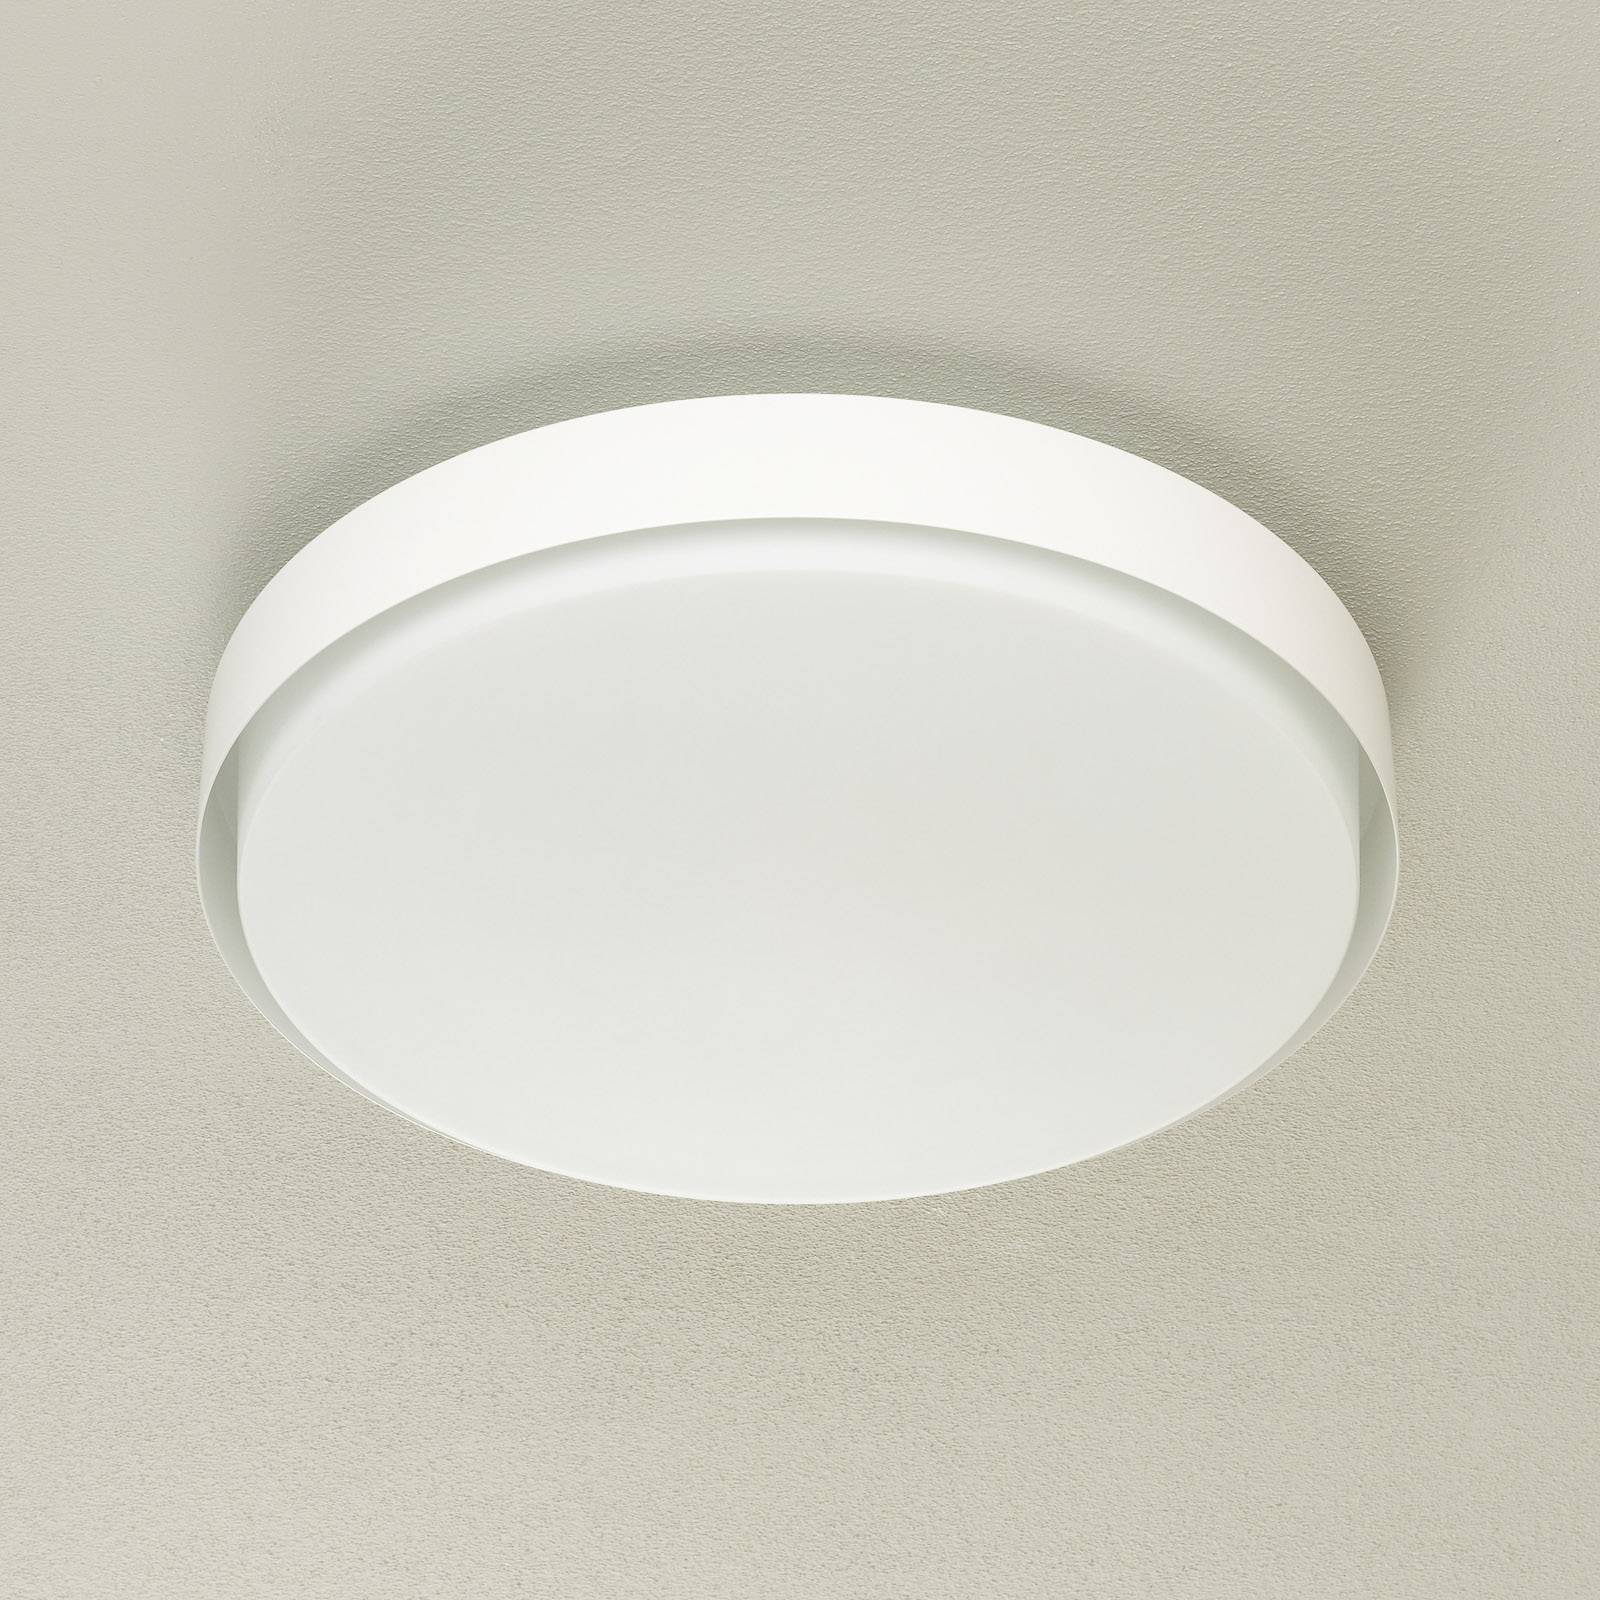 BEGA 12165 LED-Deckenleuchte weiß, Ø 50 cm, DALI